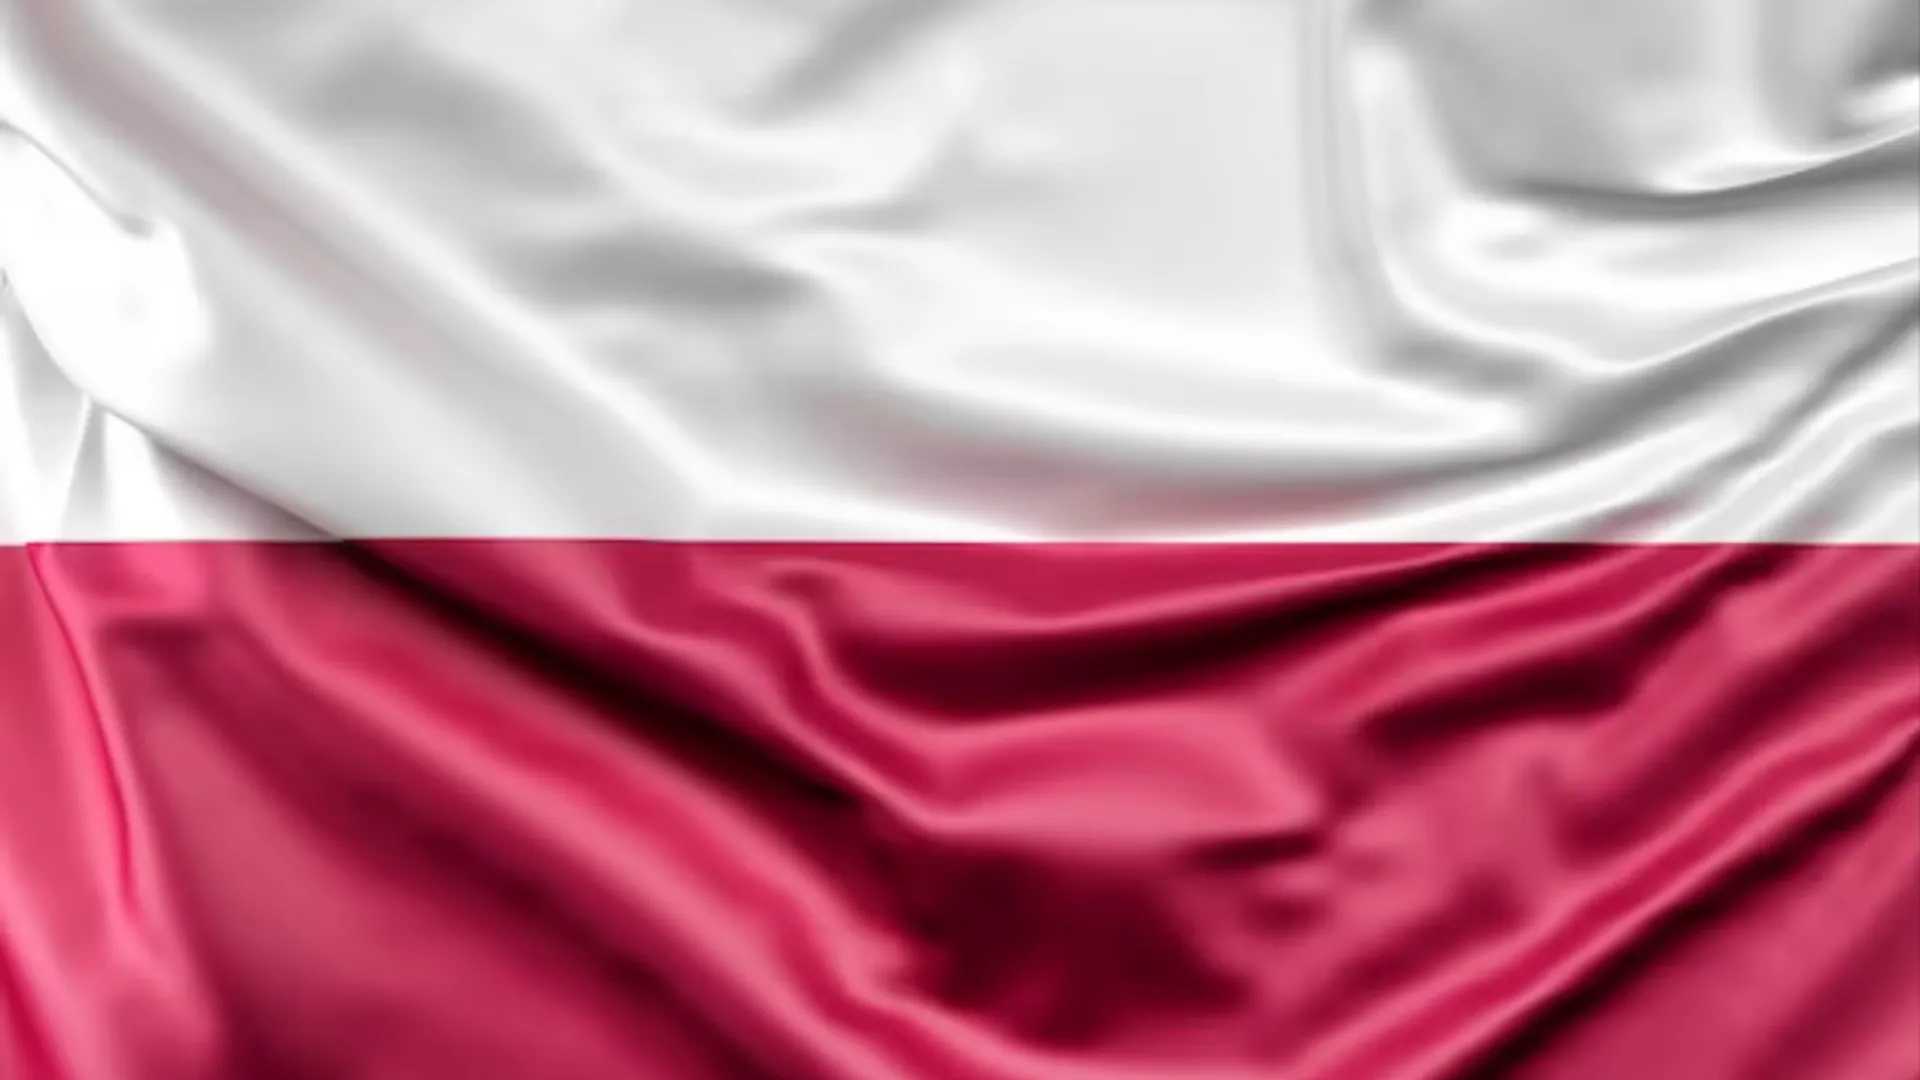 Политолог Гуреев рассказал, вступит ли Польша в открытый конфликт с Россией